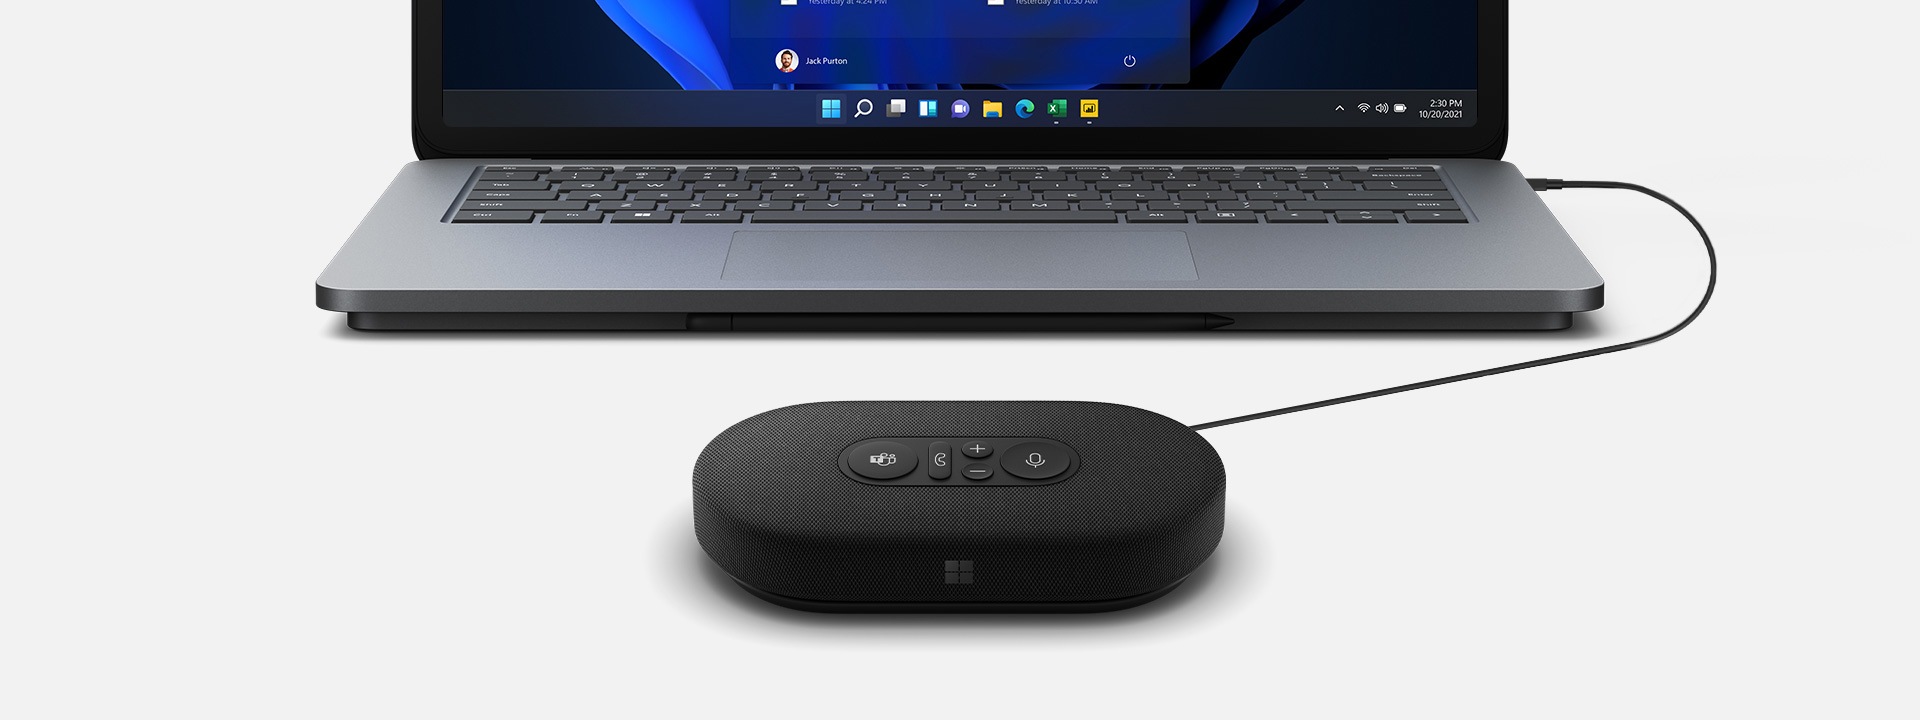 En bild av en Microsoft modern USB-C-högtalare som är ansluten till en Surface-enhet i bakgrunden